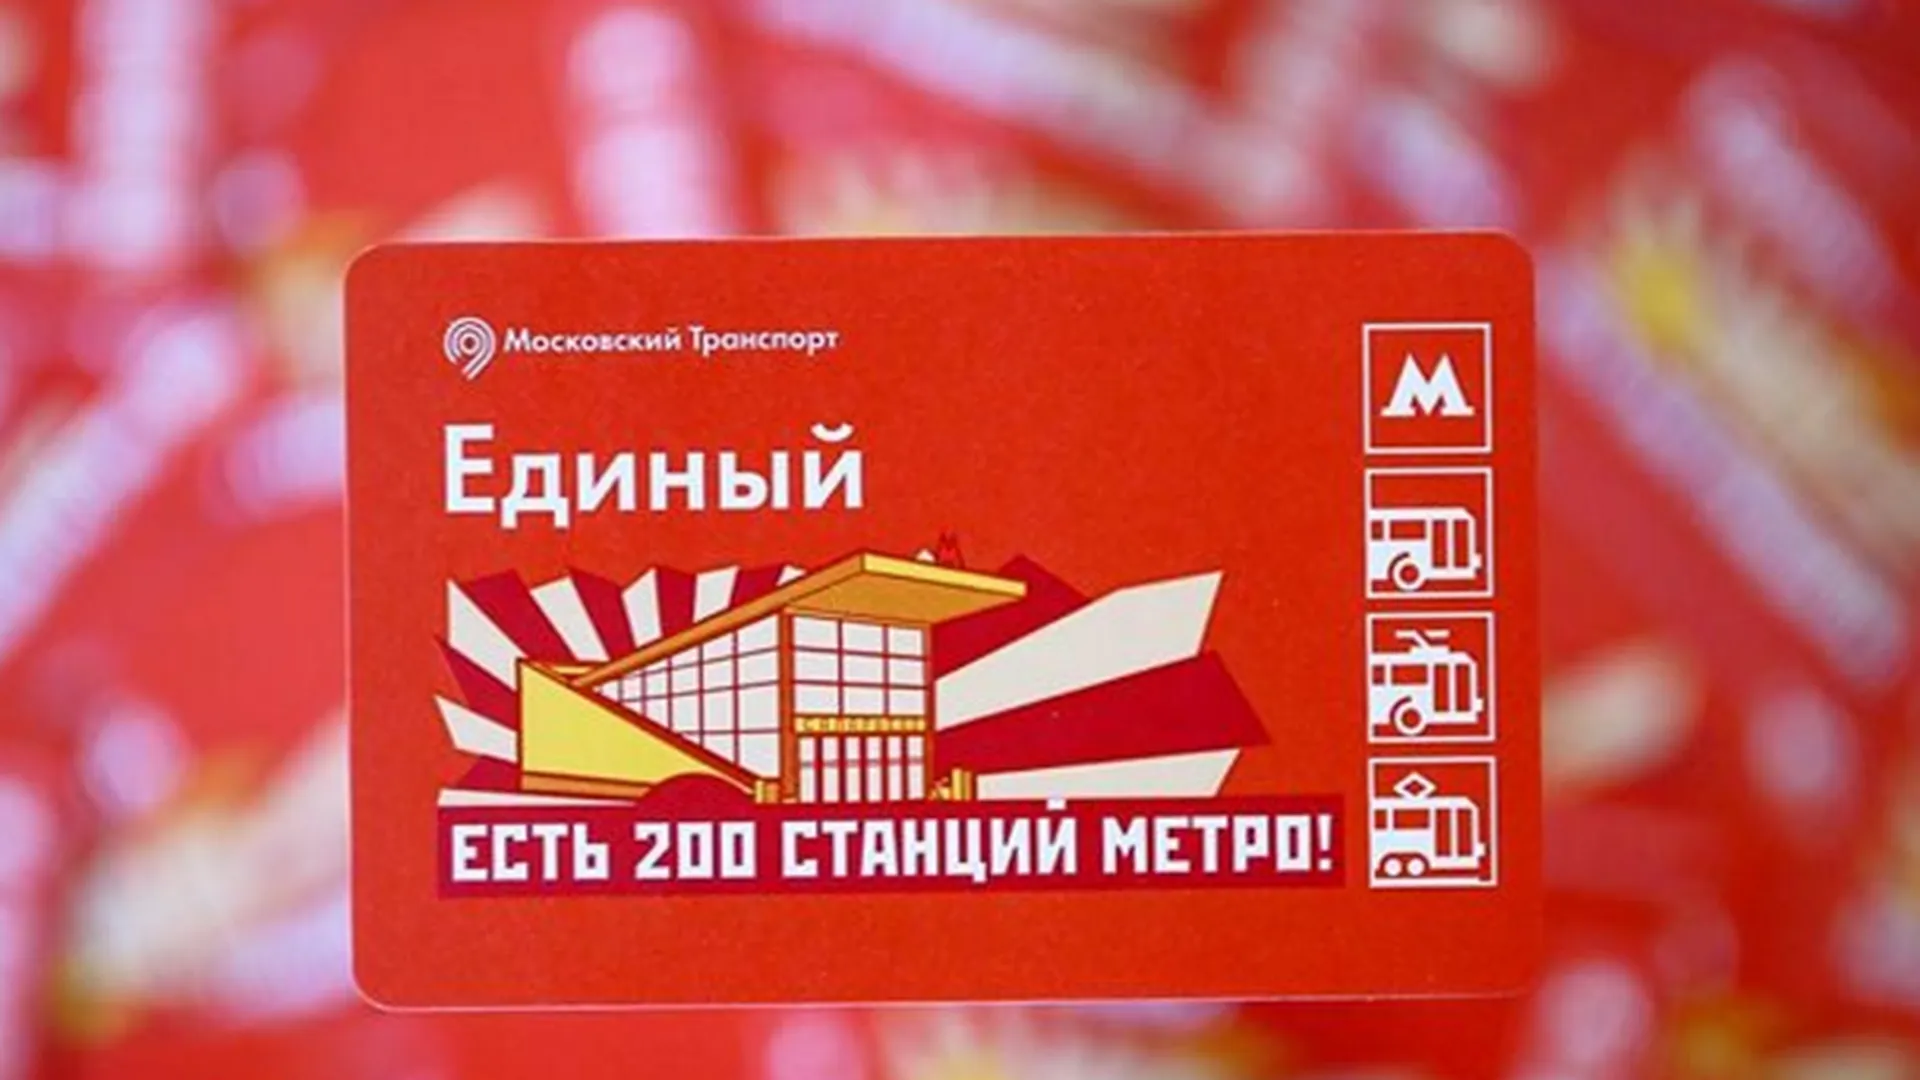 Билеты в честь 200-й станции метро Москвы начали продавать в подземке